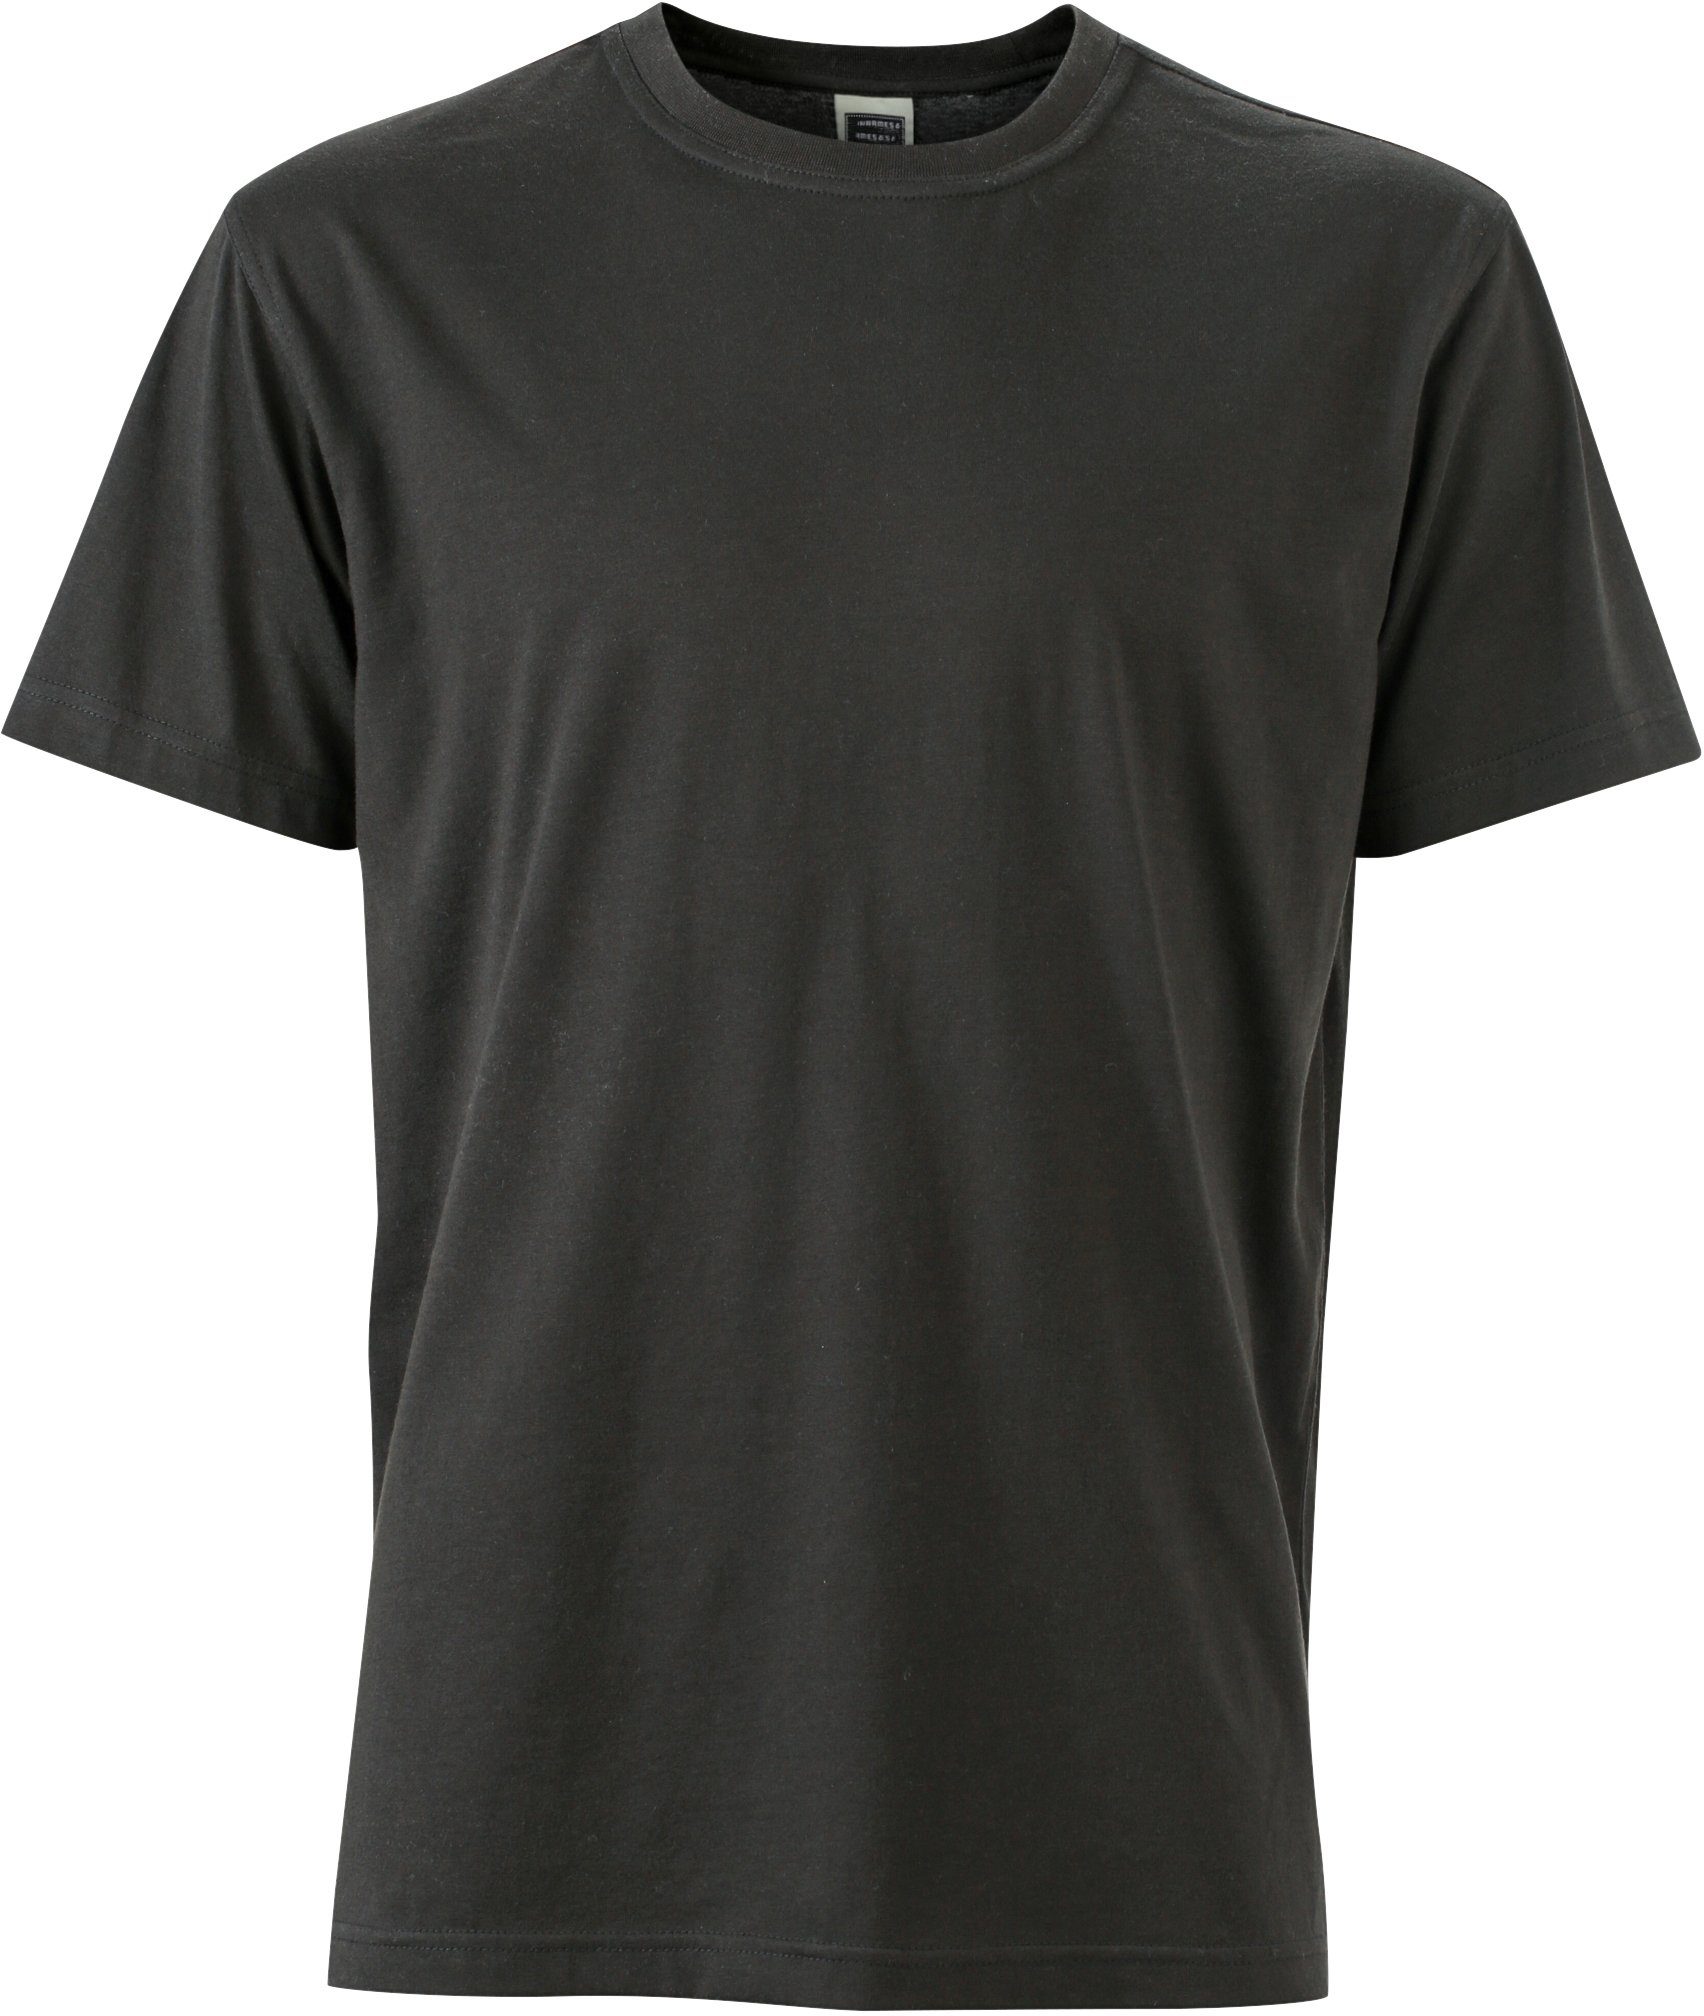 James & Nicholson T-Shirt Workwear T-Shirt FaS50838 auch in großen Größen Black